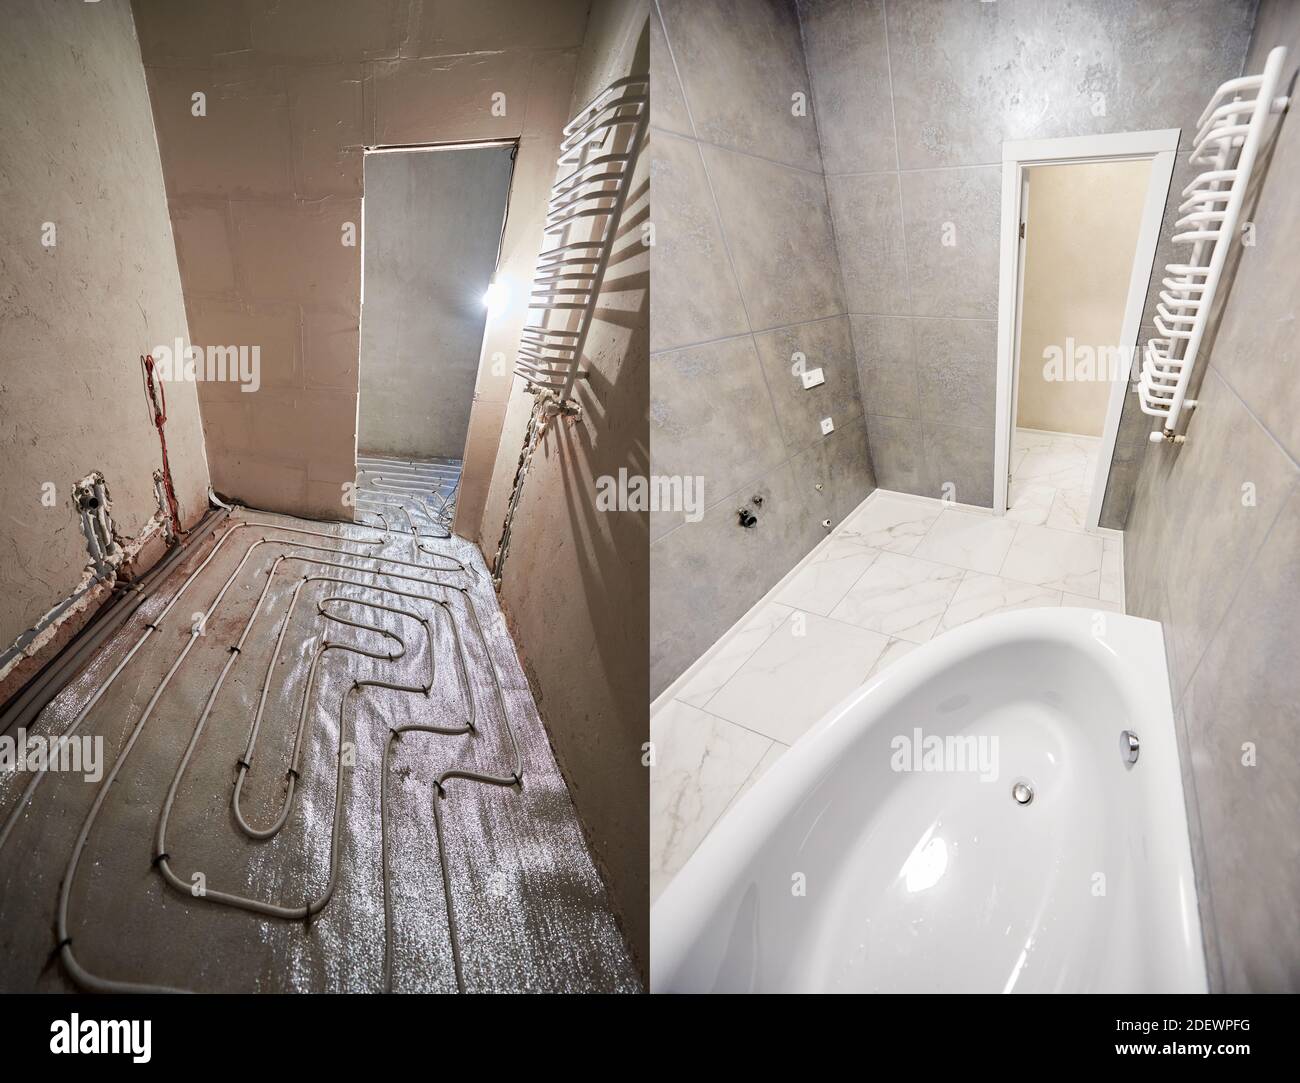 Salle de bains moderne avec sol en marbre avant et après rénovation.  Comparaison entre les anciennes toilettes et les tuyaux de chauffage au sol  et les nouvelles toilettes avec porte-serviettes chauffant et